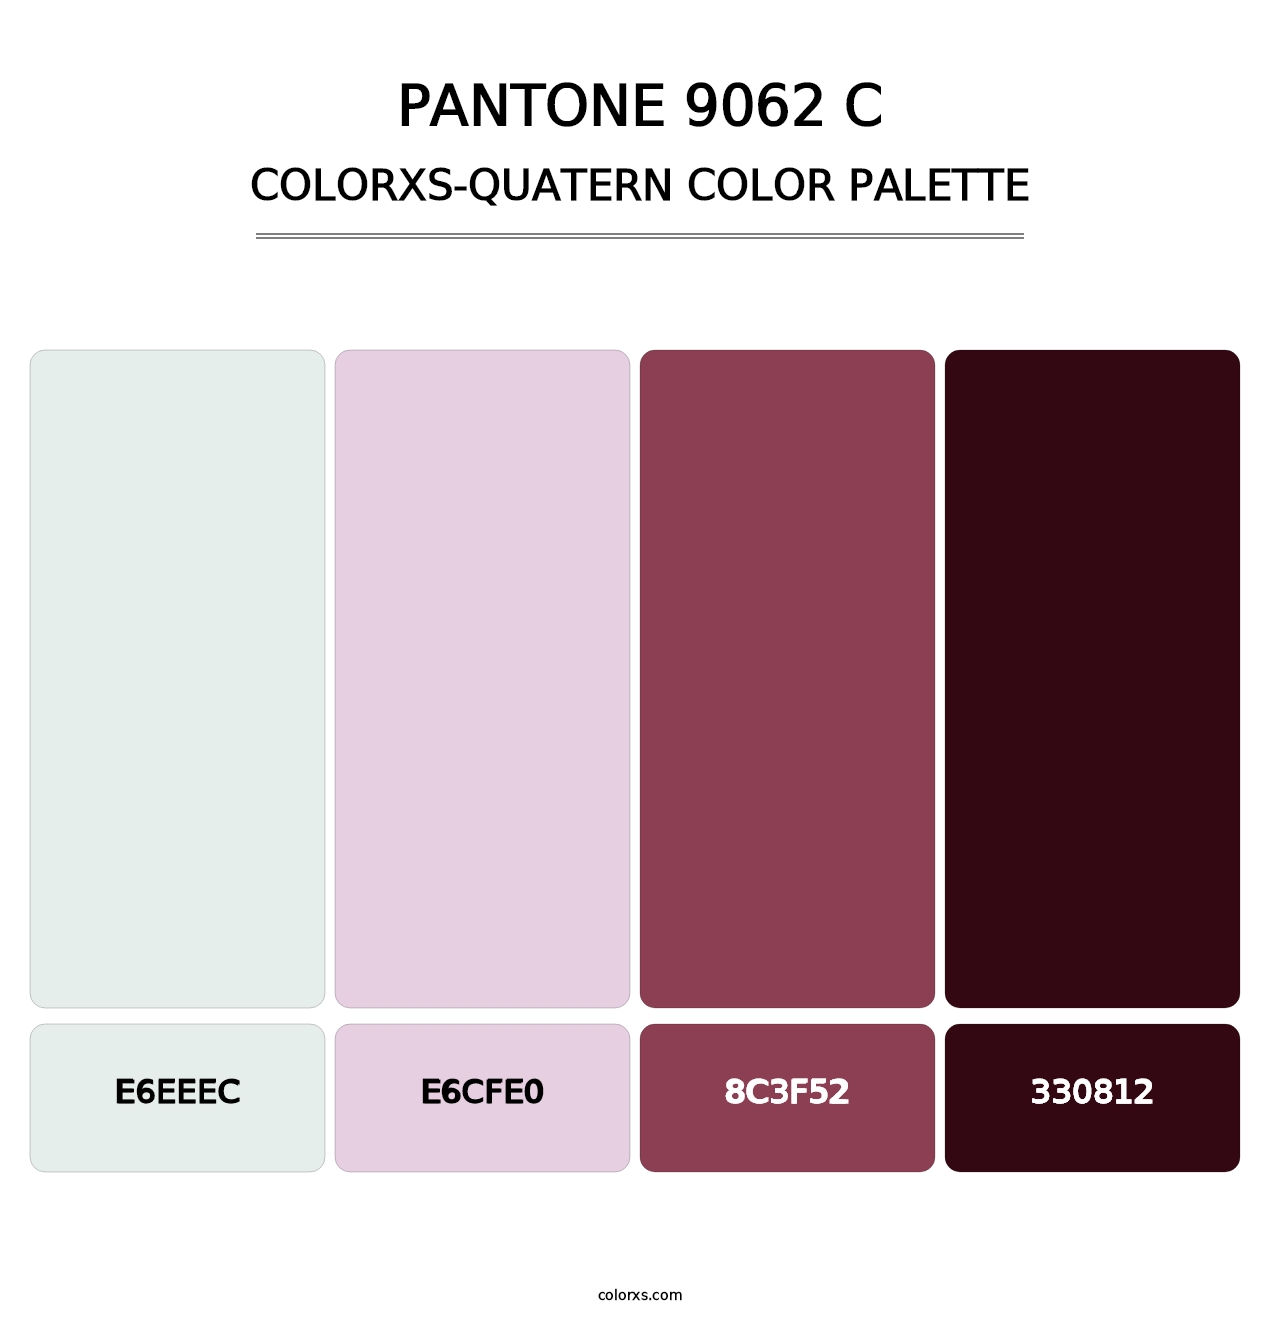 PANTONE 9062 C - Colorxs Quatern Palette